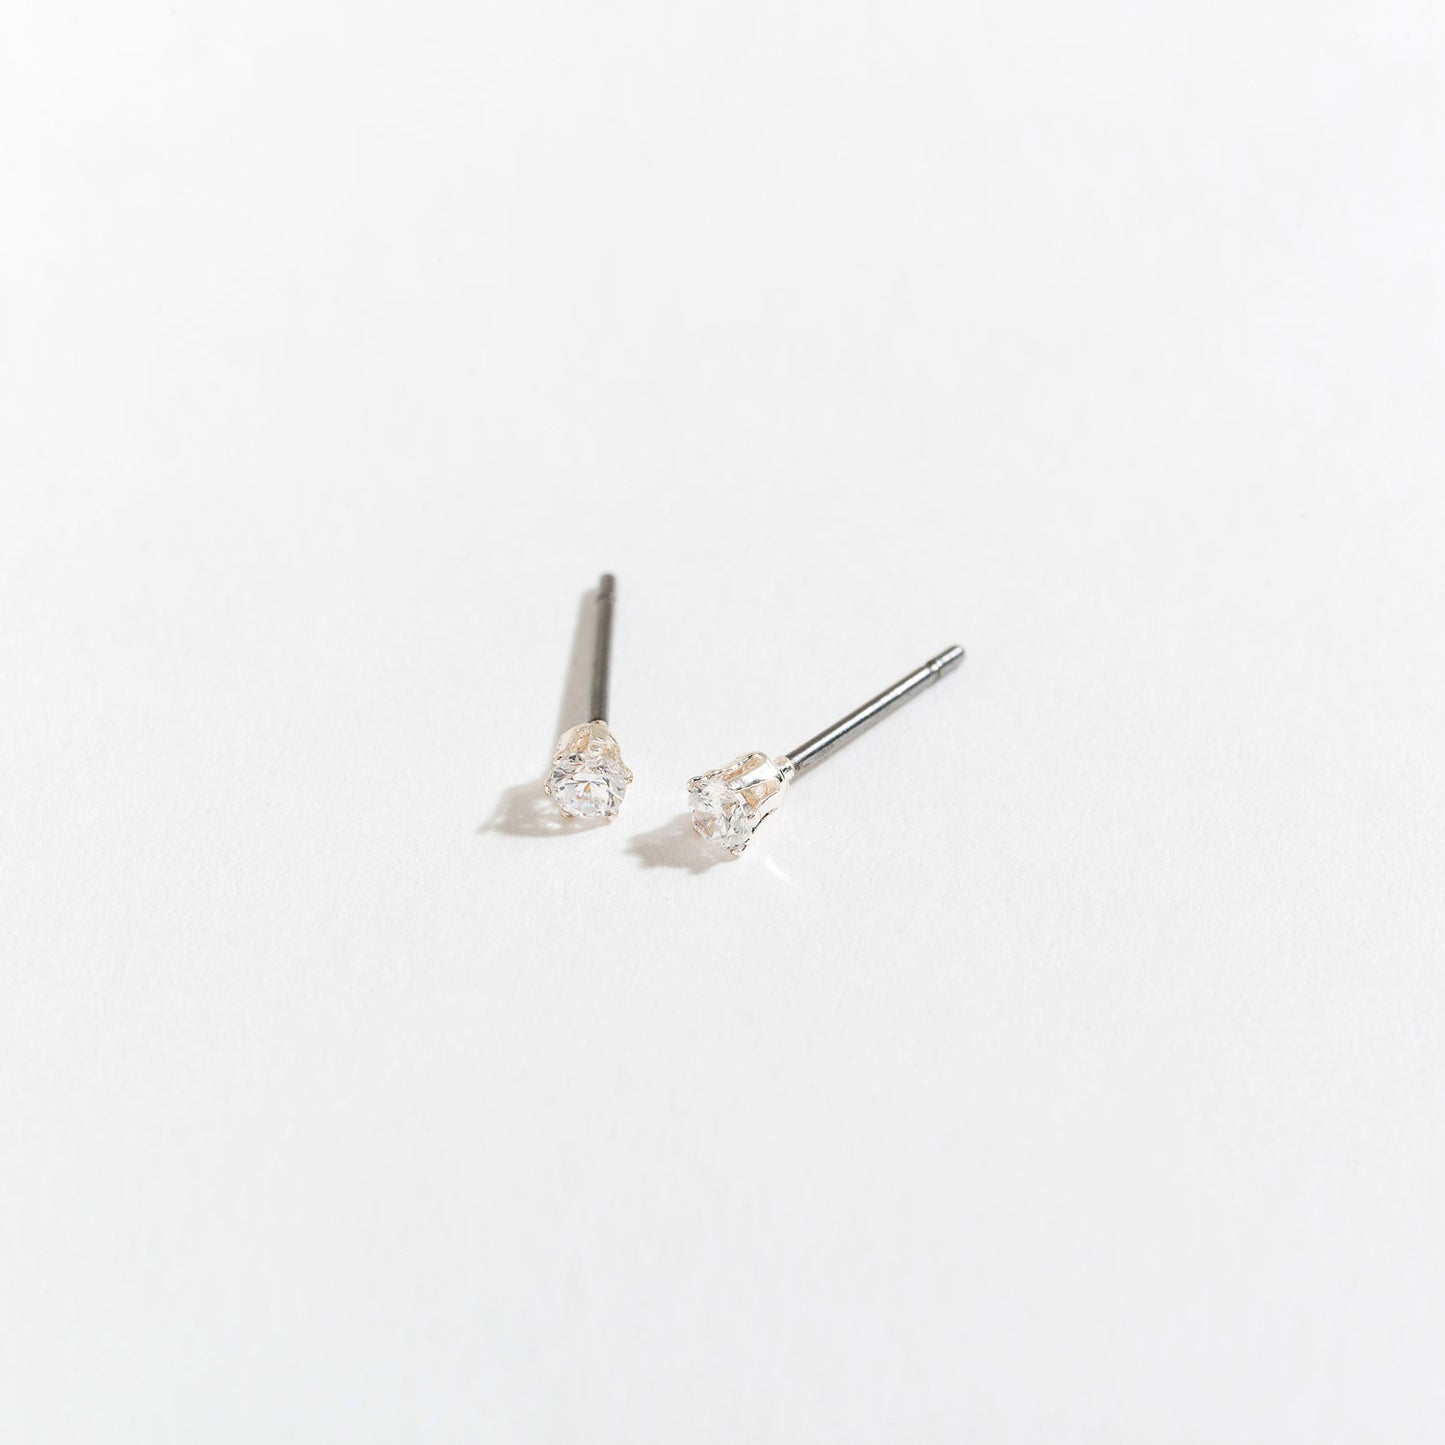 2mm Cubic Zirconia Stud Earrings